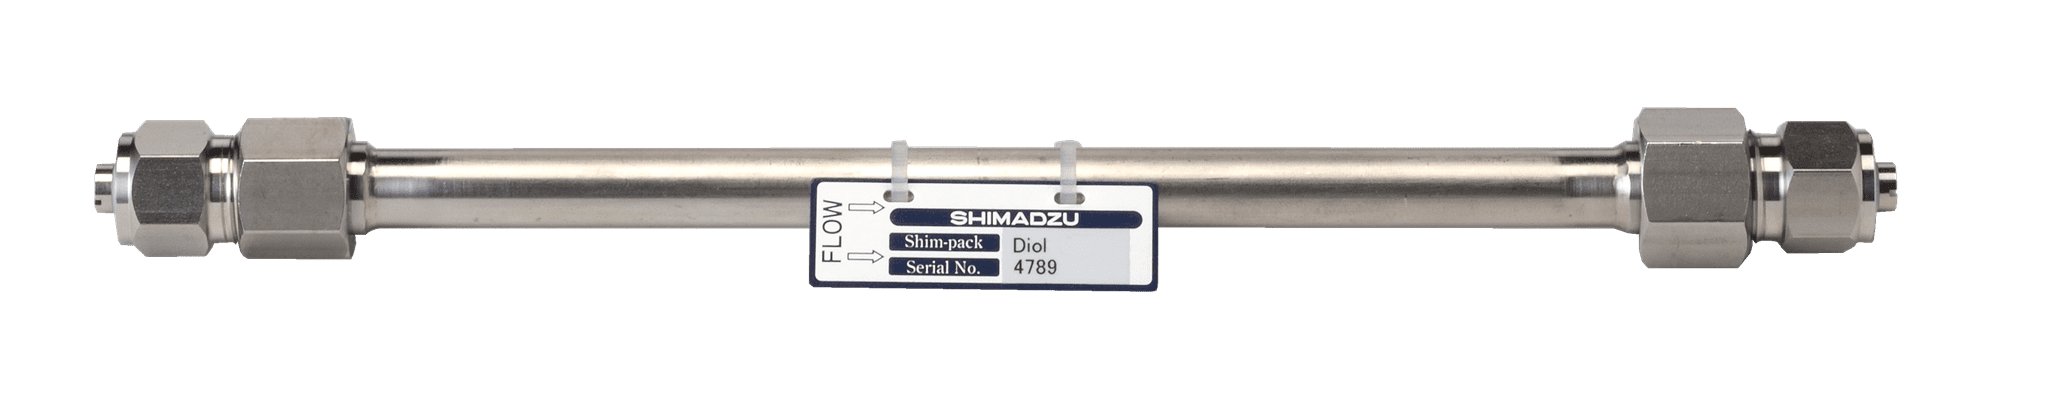 Afbeelding van Shim-pack Diol-300; 5 µm; 500 x 7.9